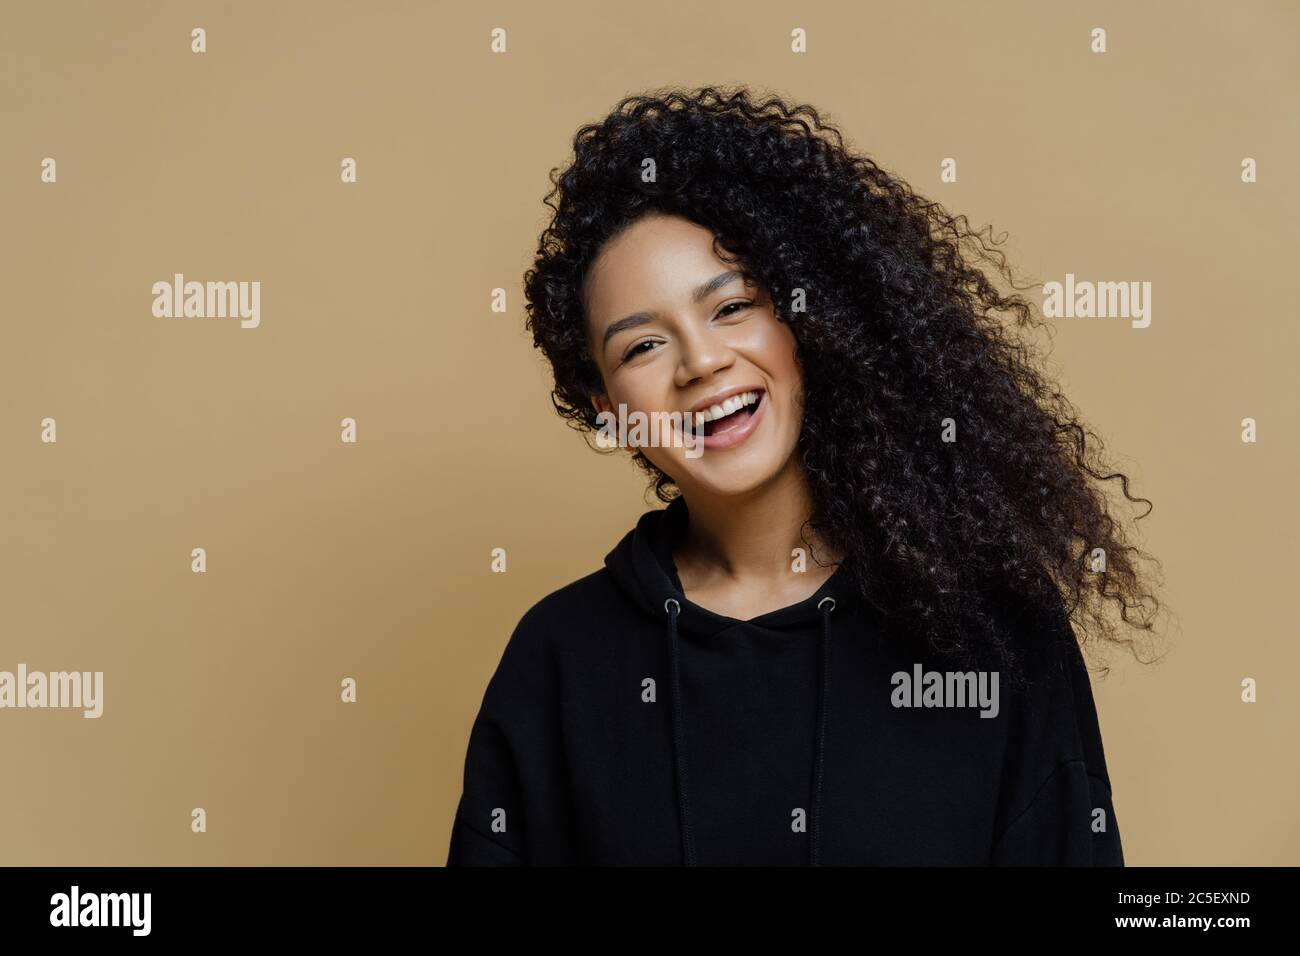 Felice positivo afroamericano donna con capelli ricci, inclina la testa e sorride ampiamente, vestito in casual felpa nera, isolato su sfondo beige Foto Stock